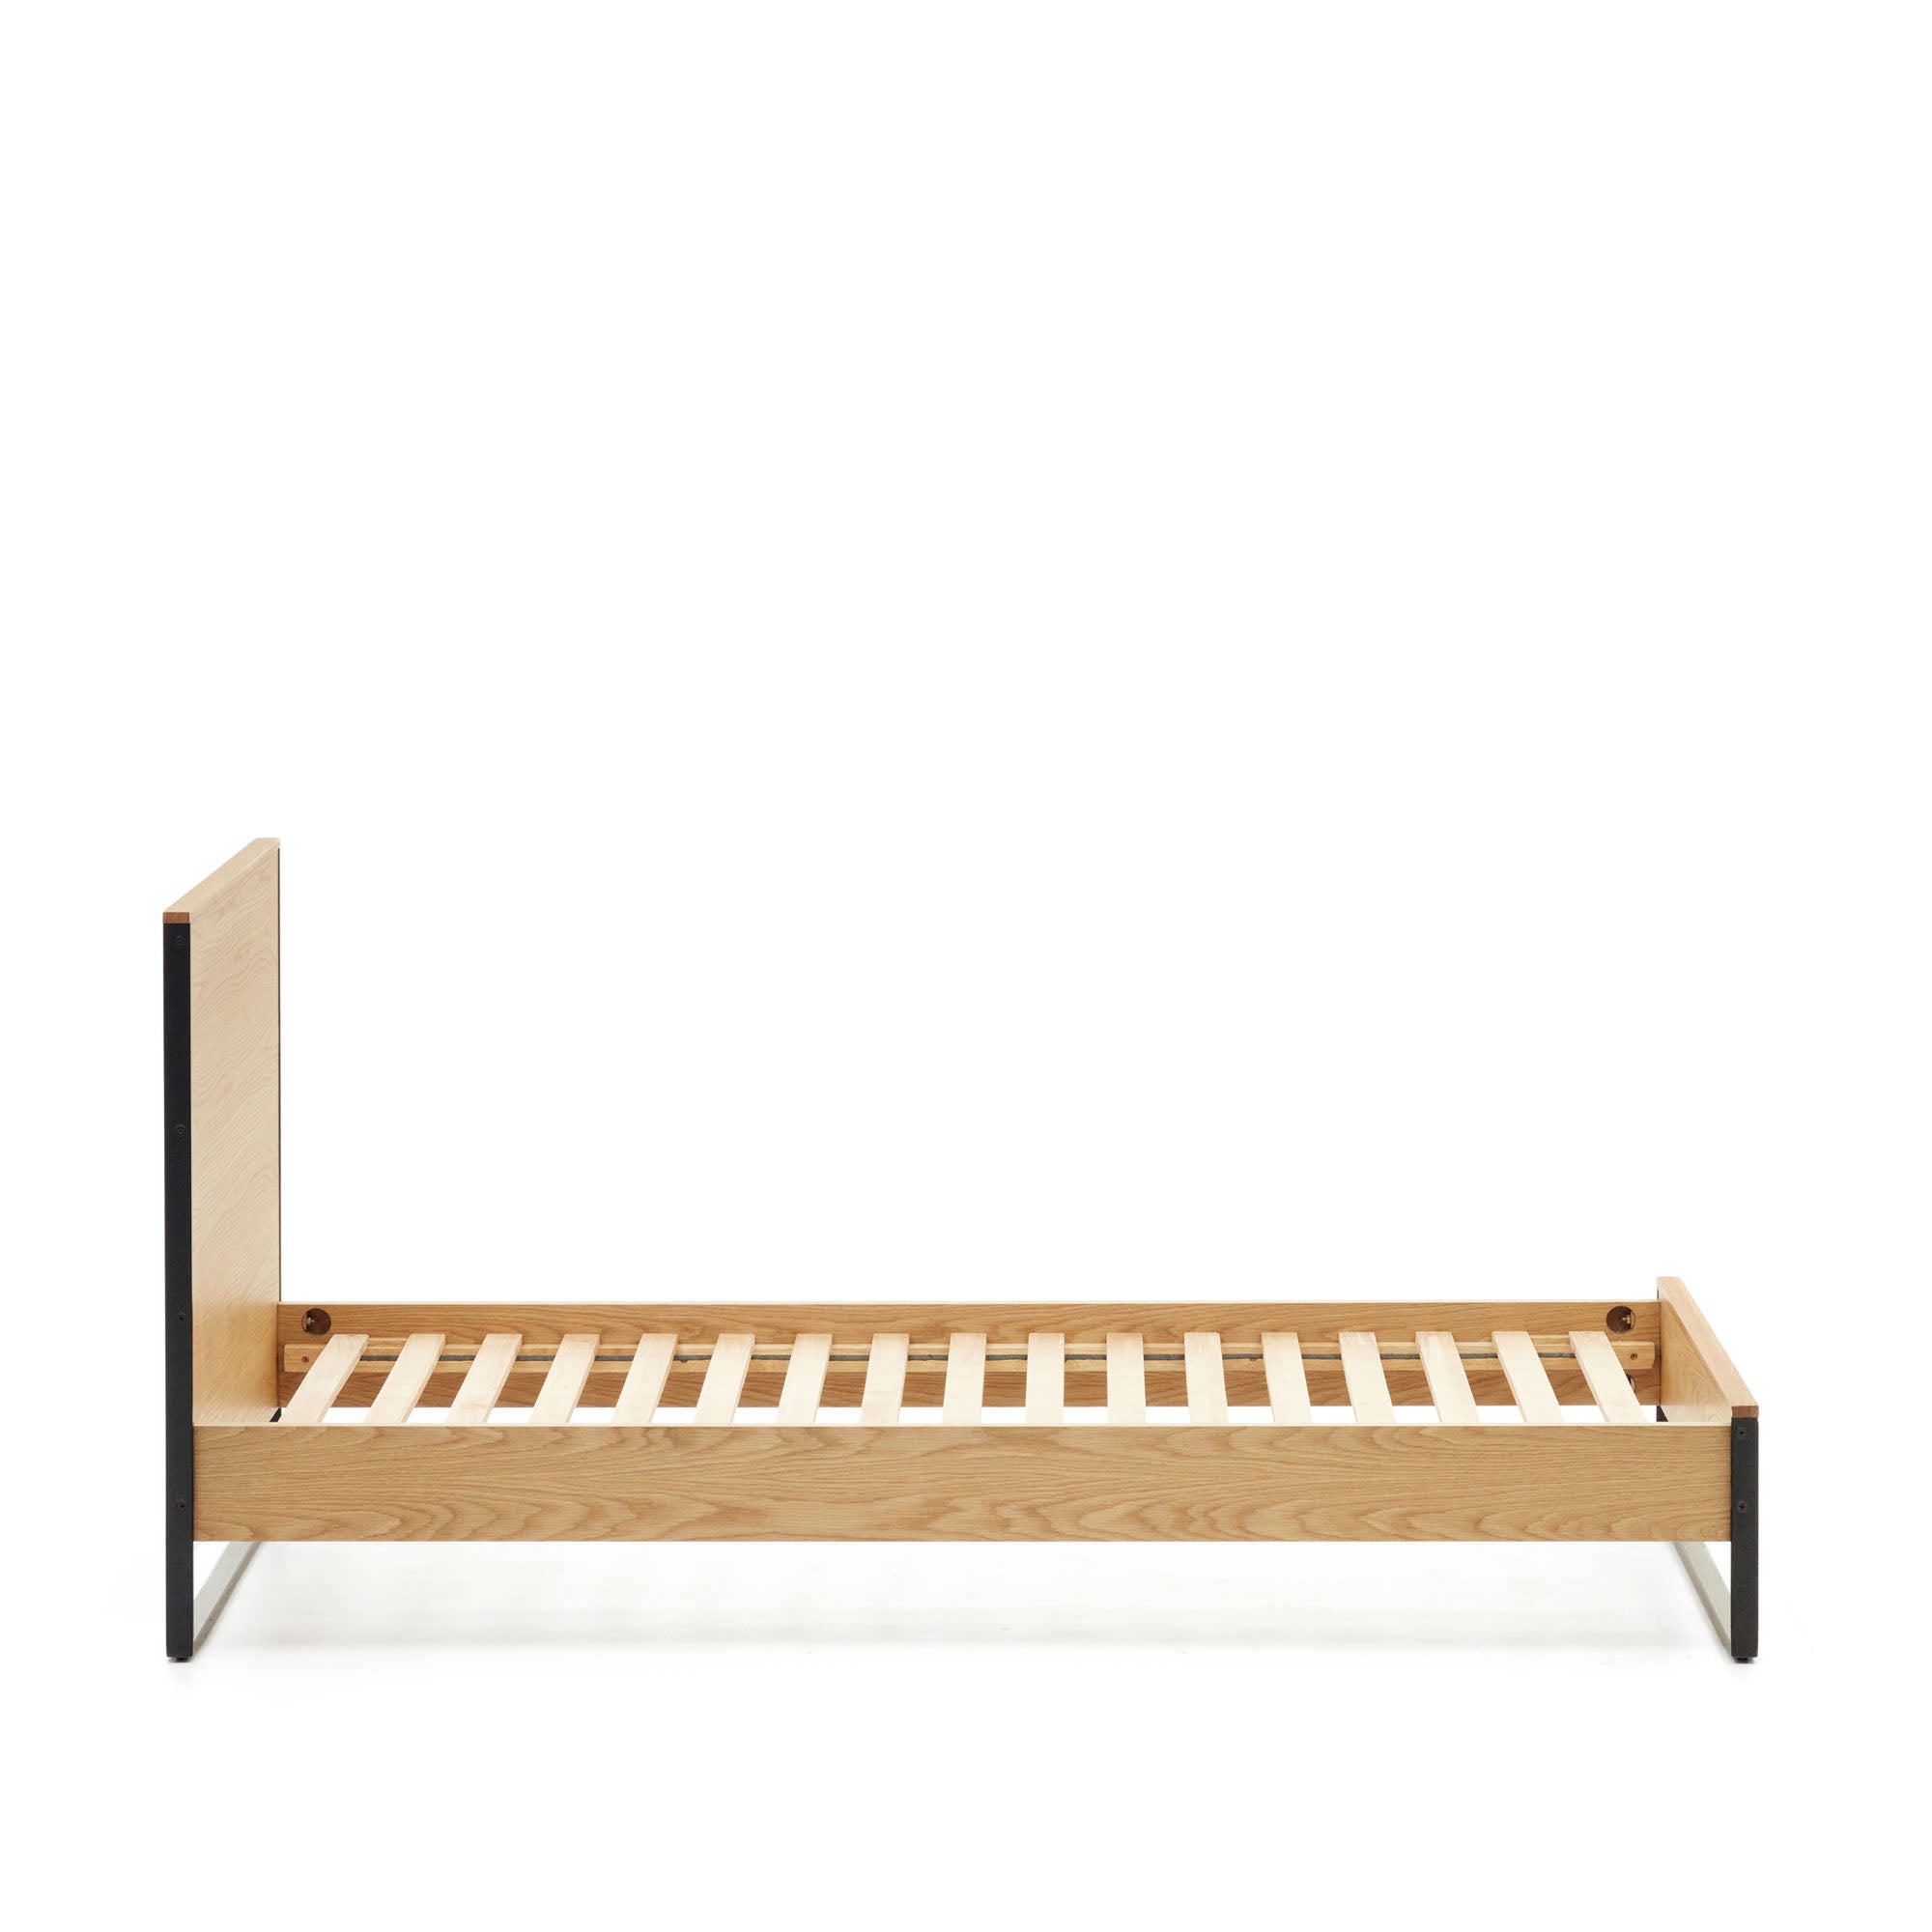 Taiana oak wood veneer bed with steel legs in a black finish, 90 x 190 cm